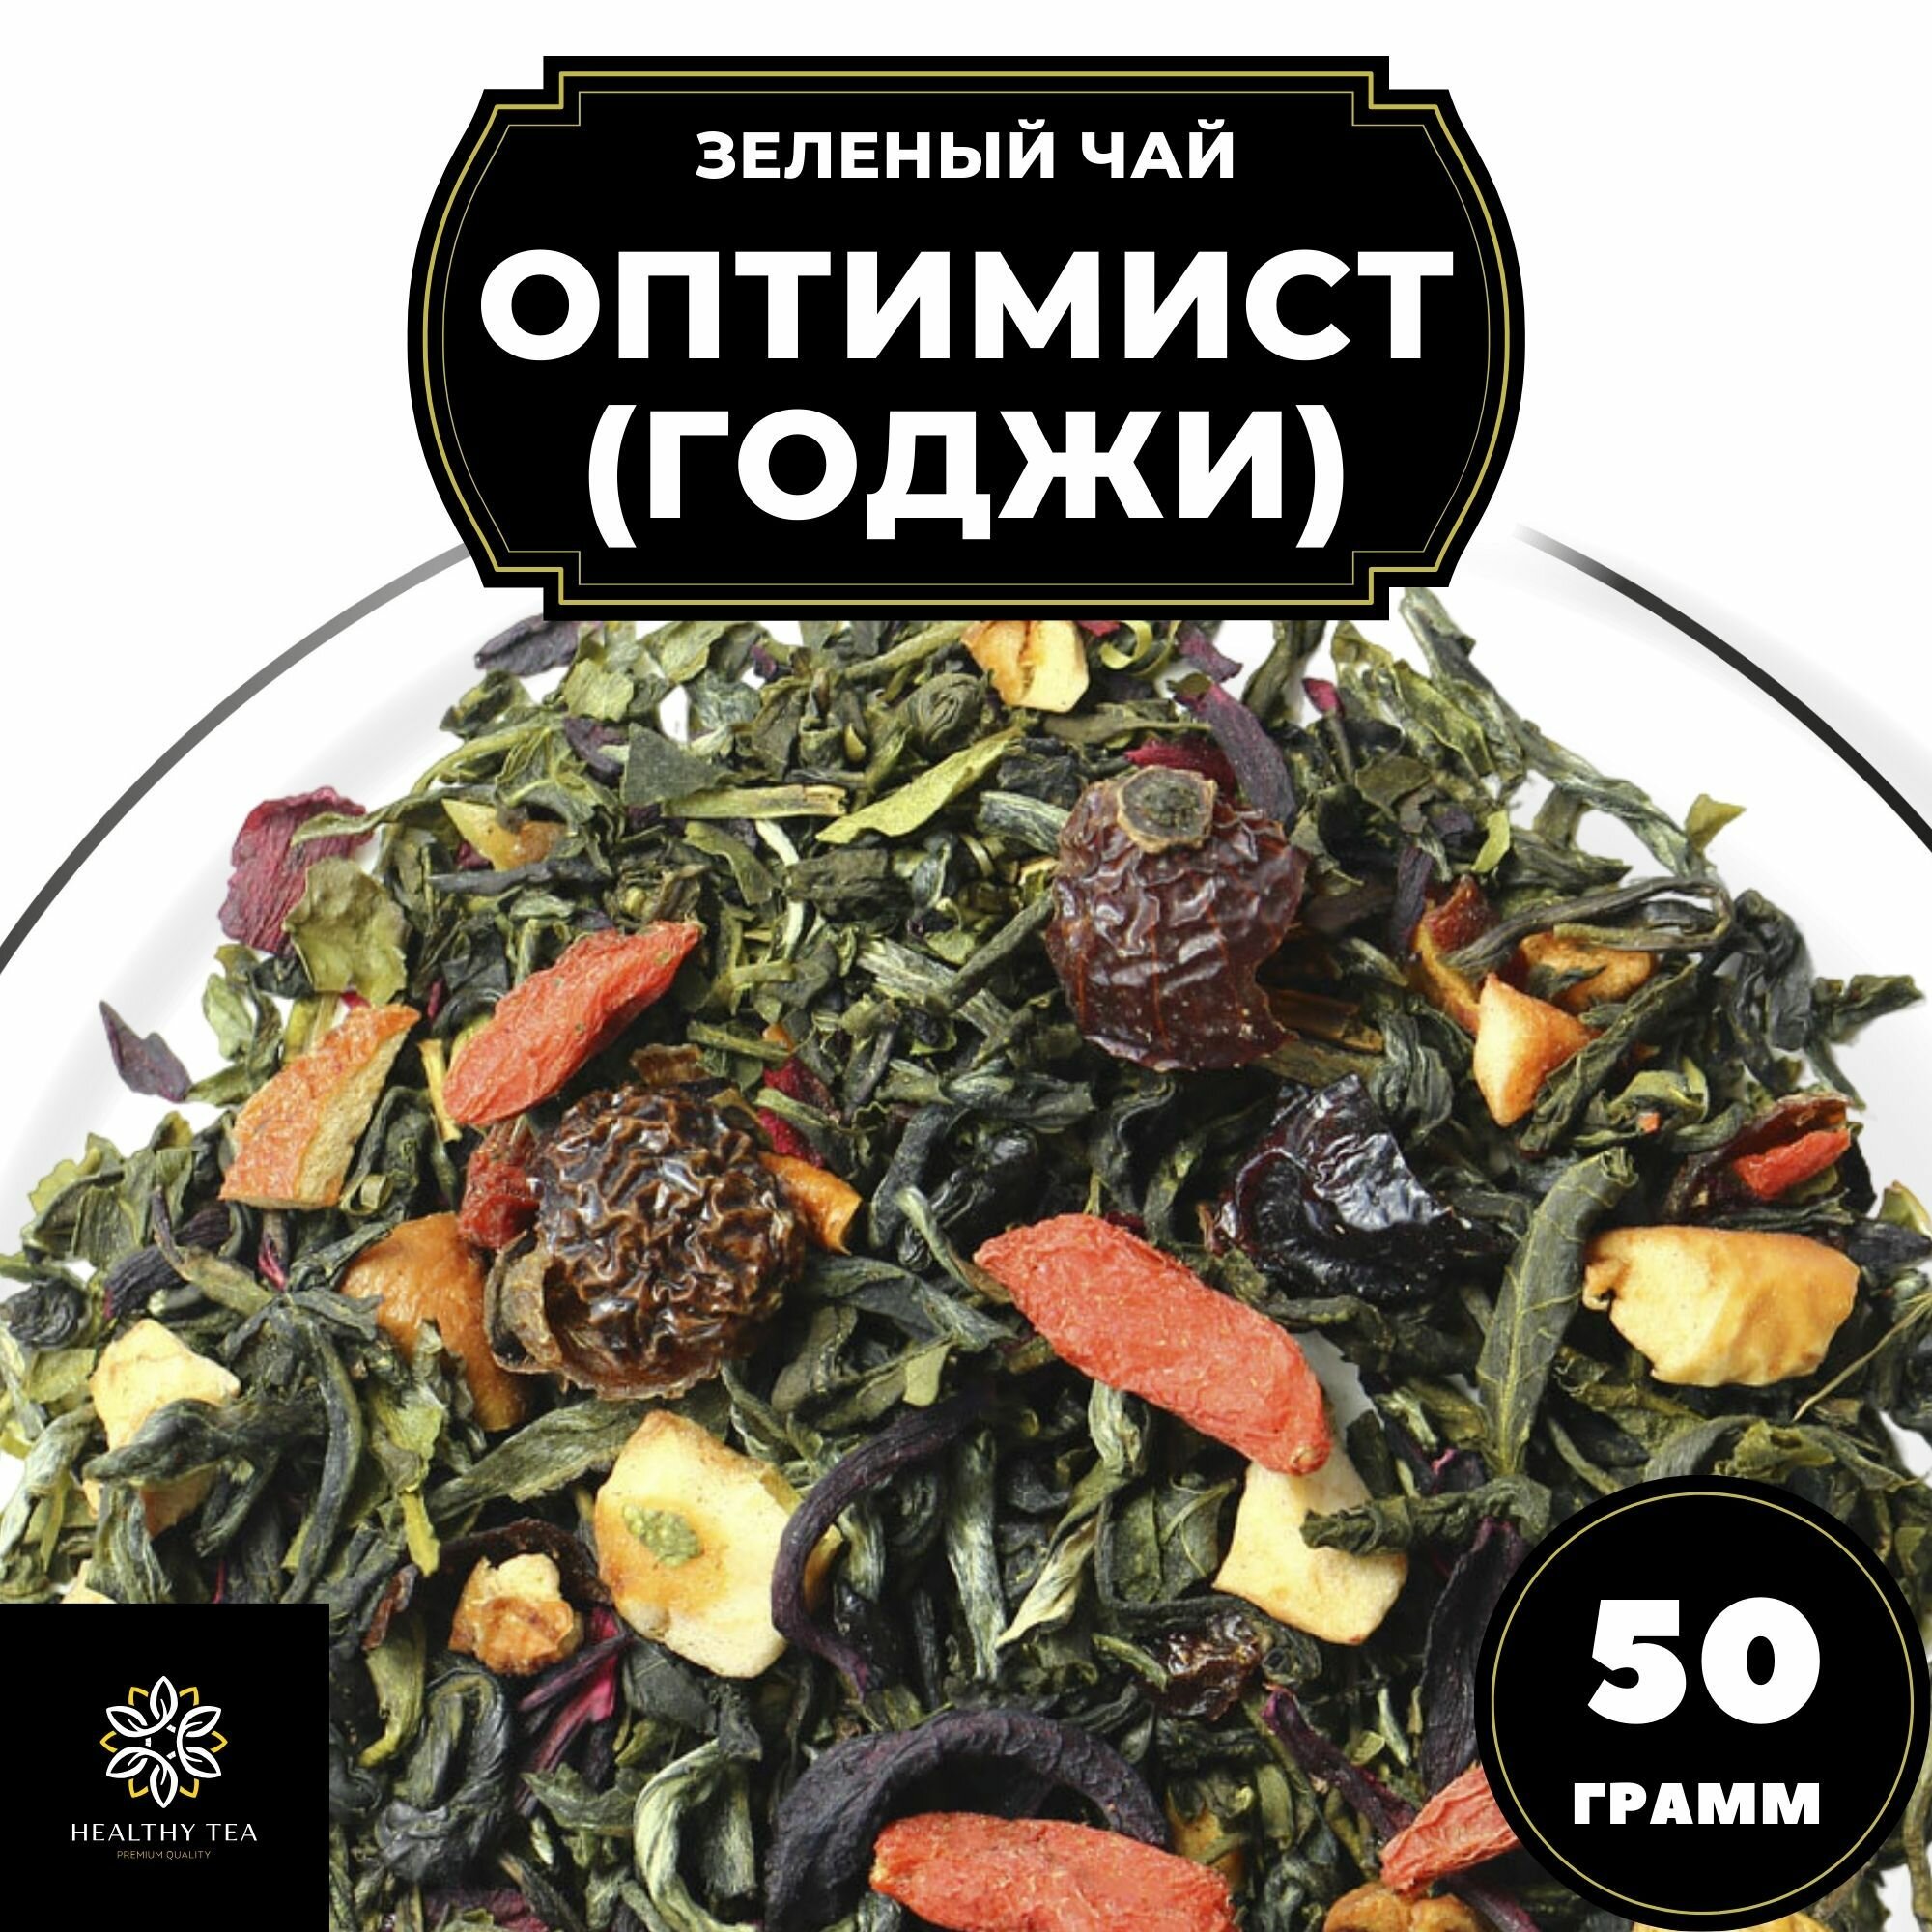 Китайский Зеленый чай с ягодами годжи, шиповником и каркаде Оптимист (Годжи) Полезный чай / HEALTHY TEA, 50 г